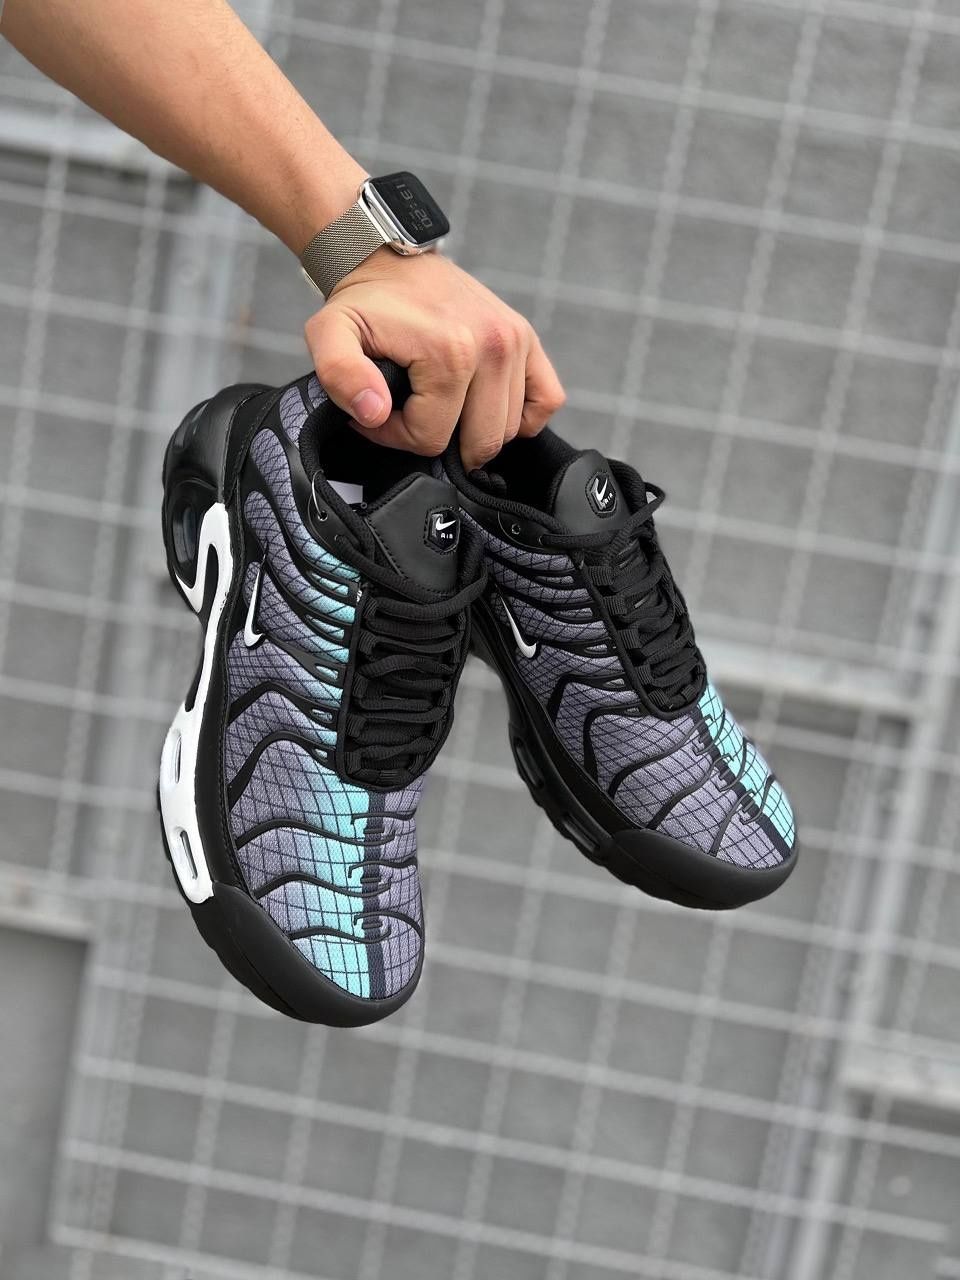 Мужские кроссовки Nike Air Max Tn Plus black&blue. Размеры 41-45

Есть